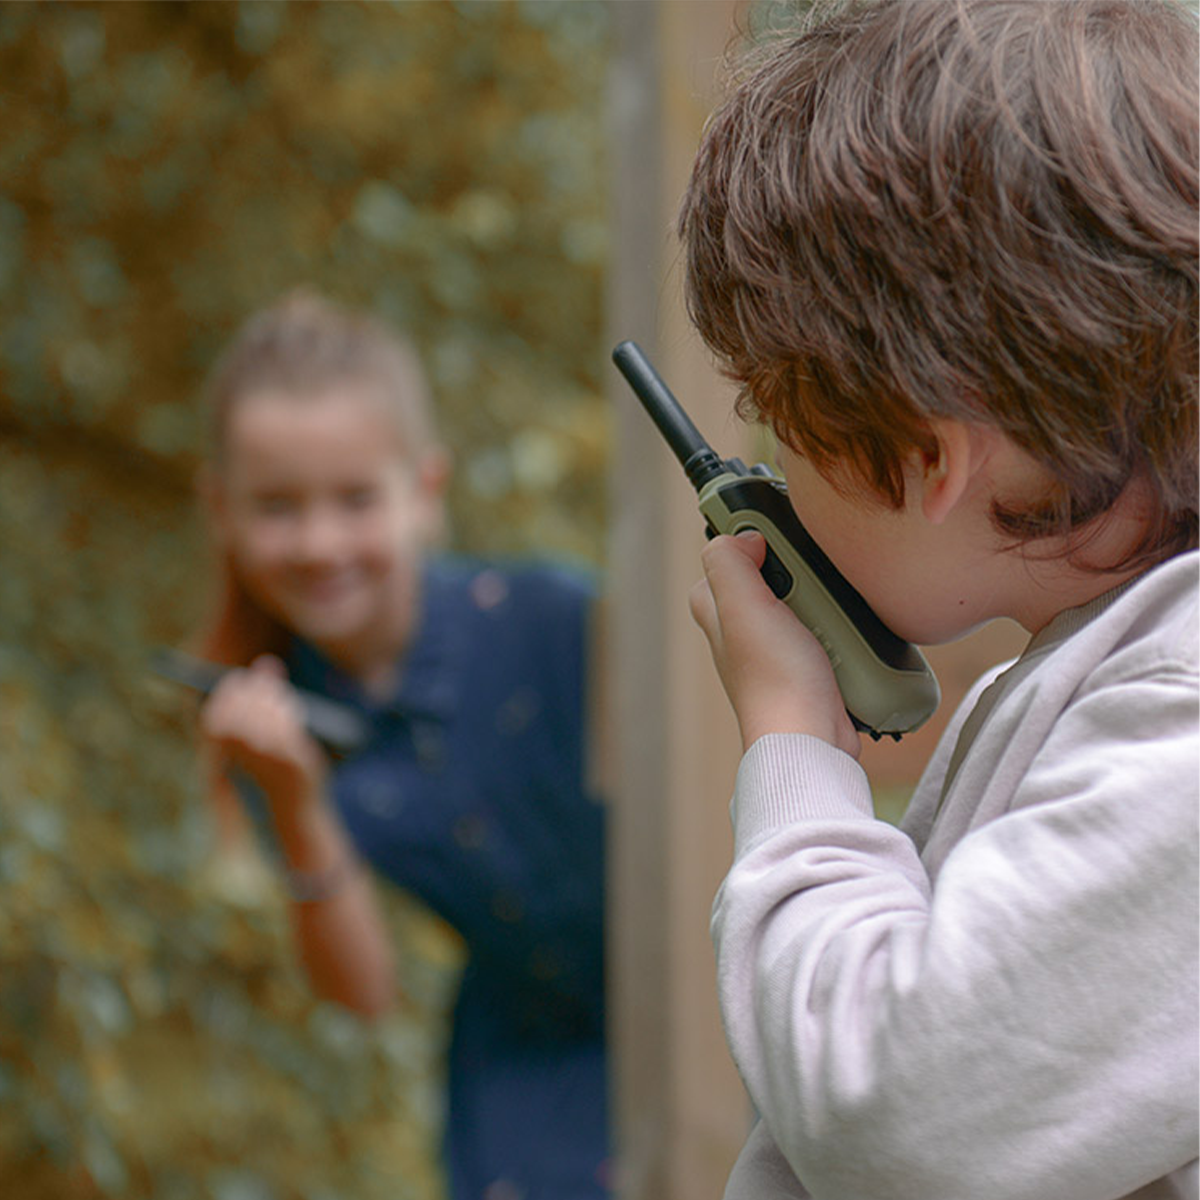 Met deze superleuke Kidytalk walkie talkie van Kidywolf kunnen kinderen met hun vriendjes (of met hun ouders!) uren plezier beleven! Met deze walkie talkies kun je namelijk tot op een afstand van 6 kilometer met elkaar communiceren. VanZus